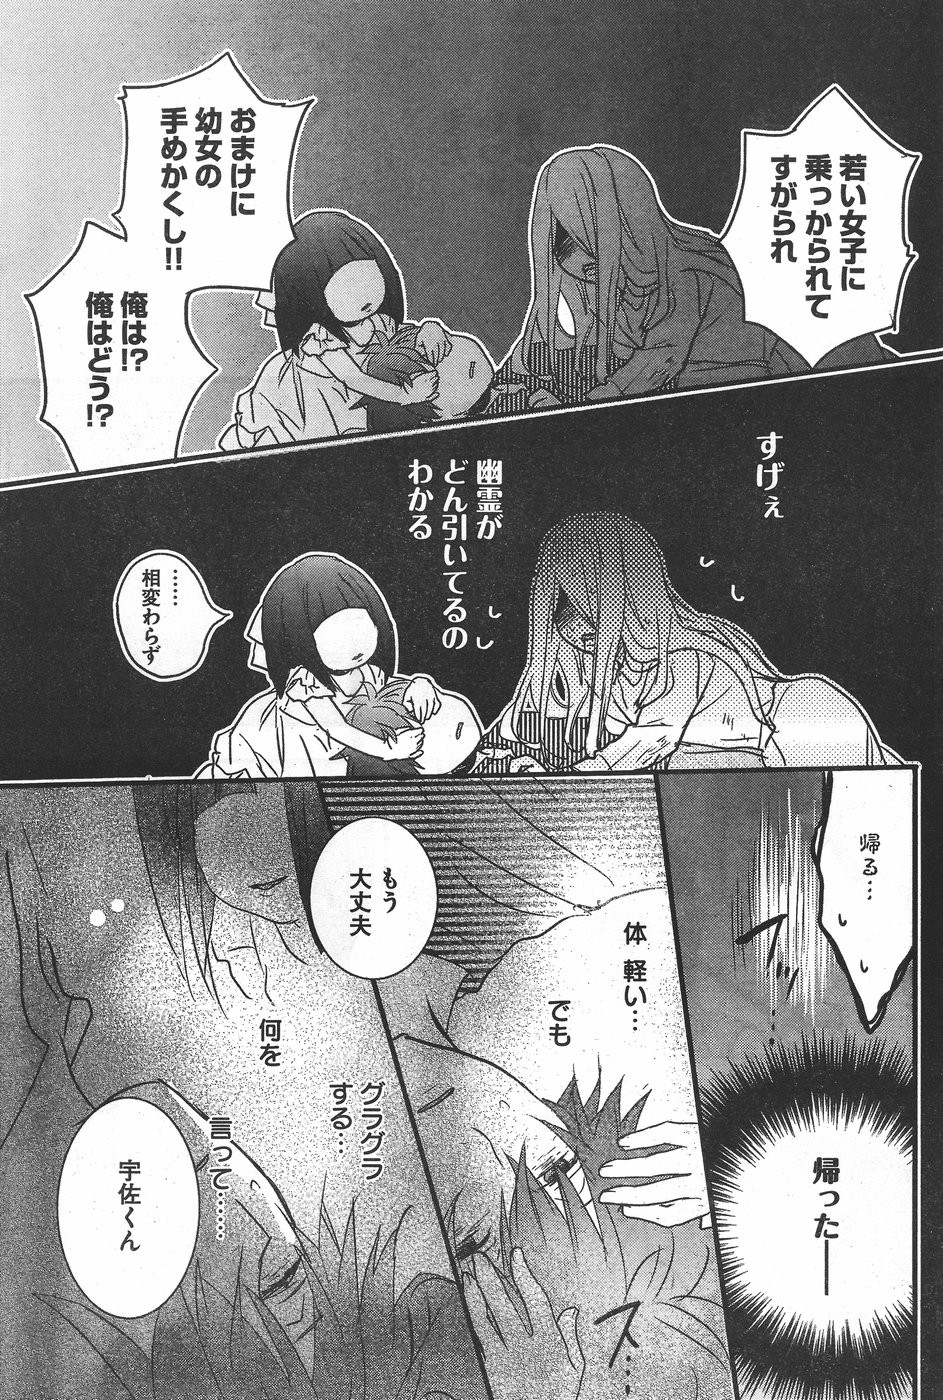 Bokura wa Minna Kawaisou - Chapter 75 - Page 18